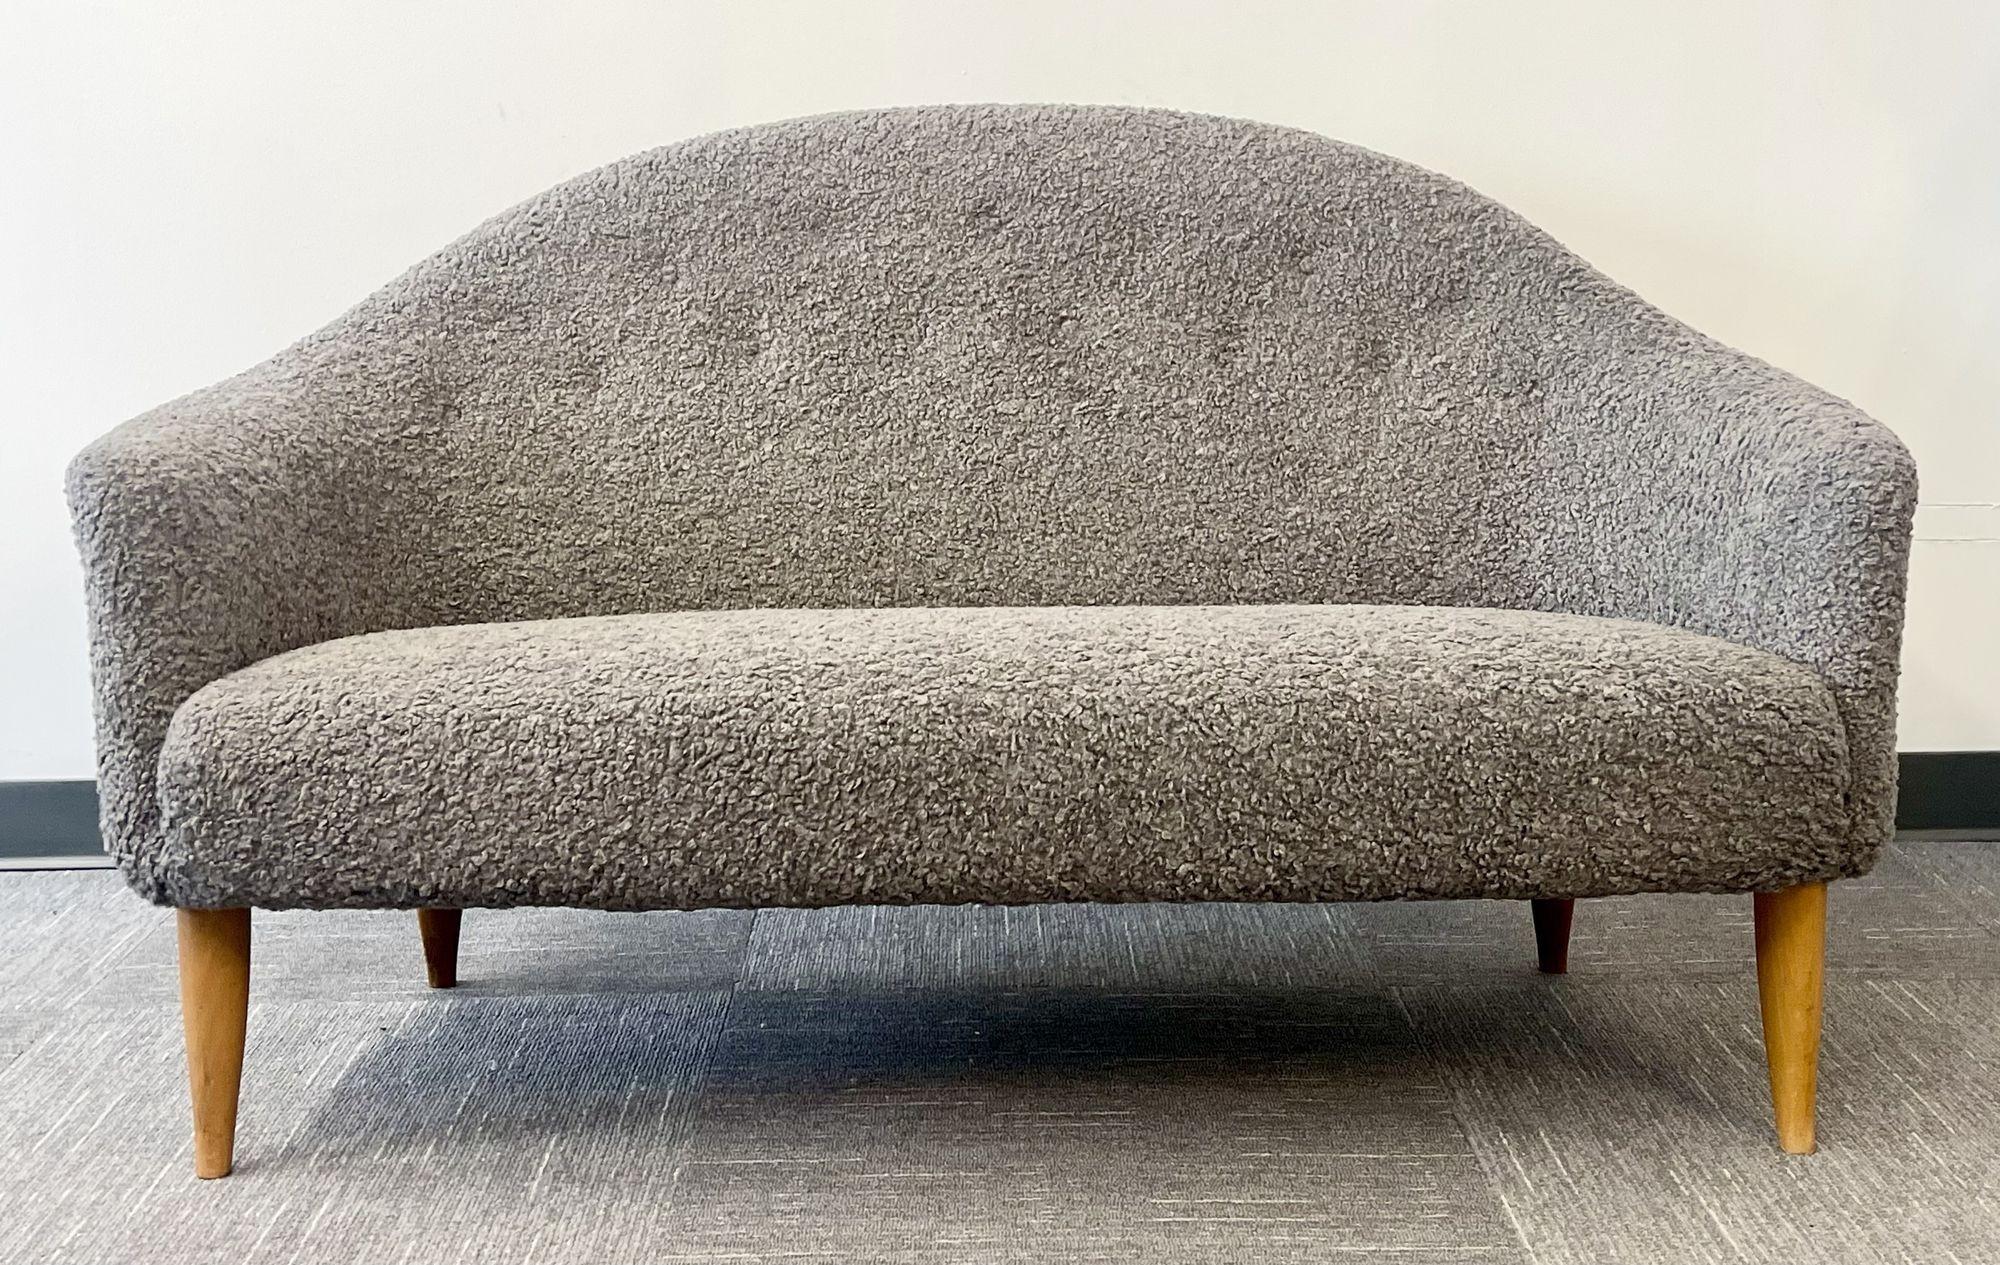 Canapé suédois 'Paradiset' de Kerstin Hörlin-Holmquist, peau de mouton
 
Canapé minimaliste chic du célèbre designer suédois appelé 